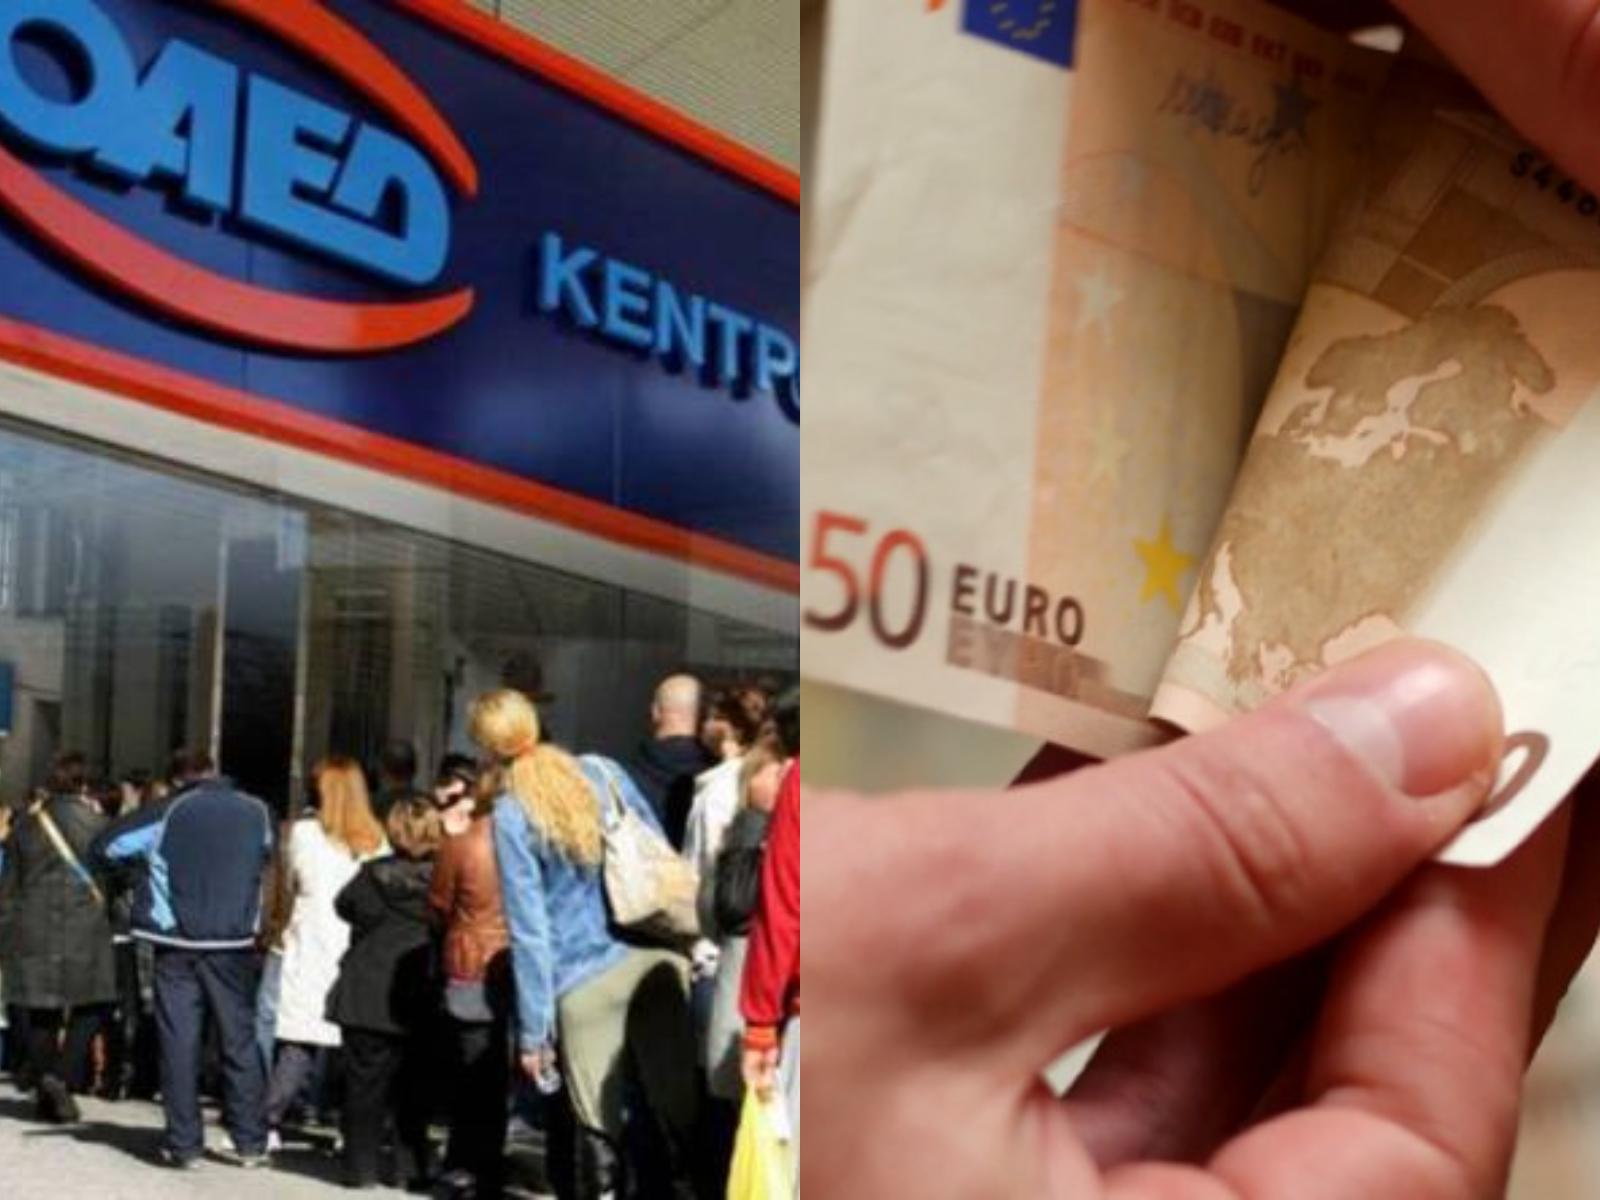 ΟΑΕΔ: Νέο επίδομα για ανέργους έως 1000 ευρώ